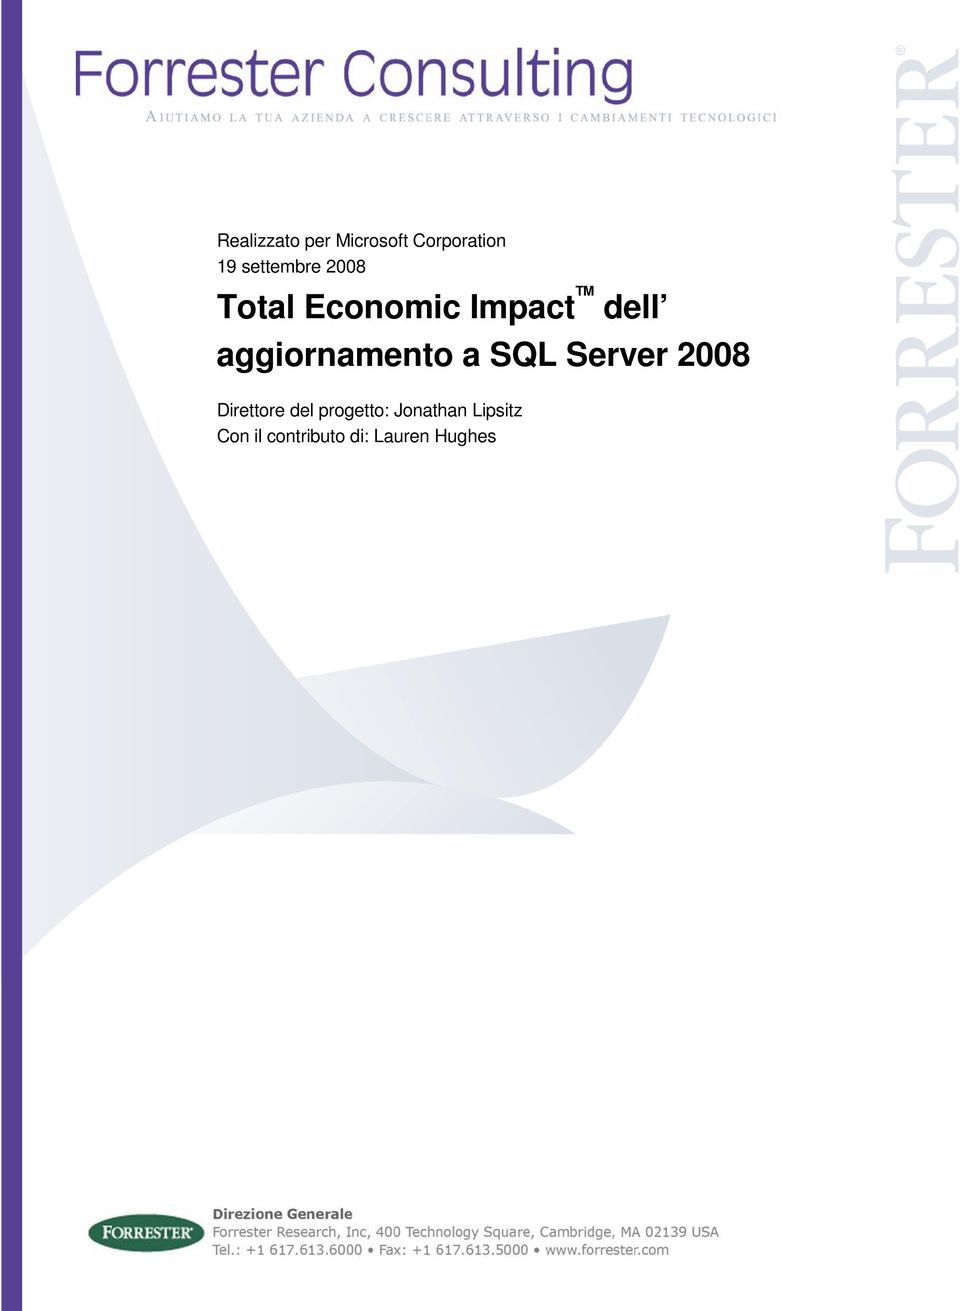 aggiornamento a SQL Server 2008 Direttore del